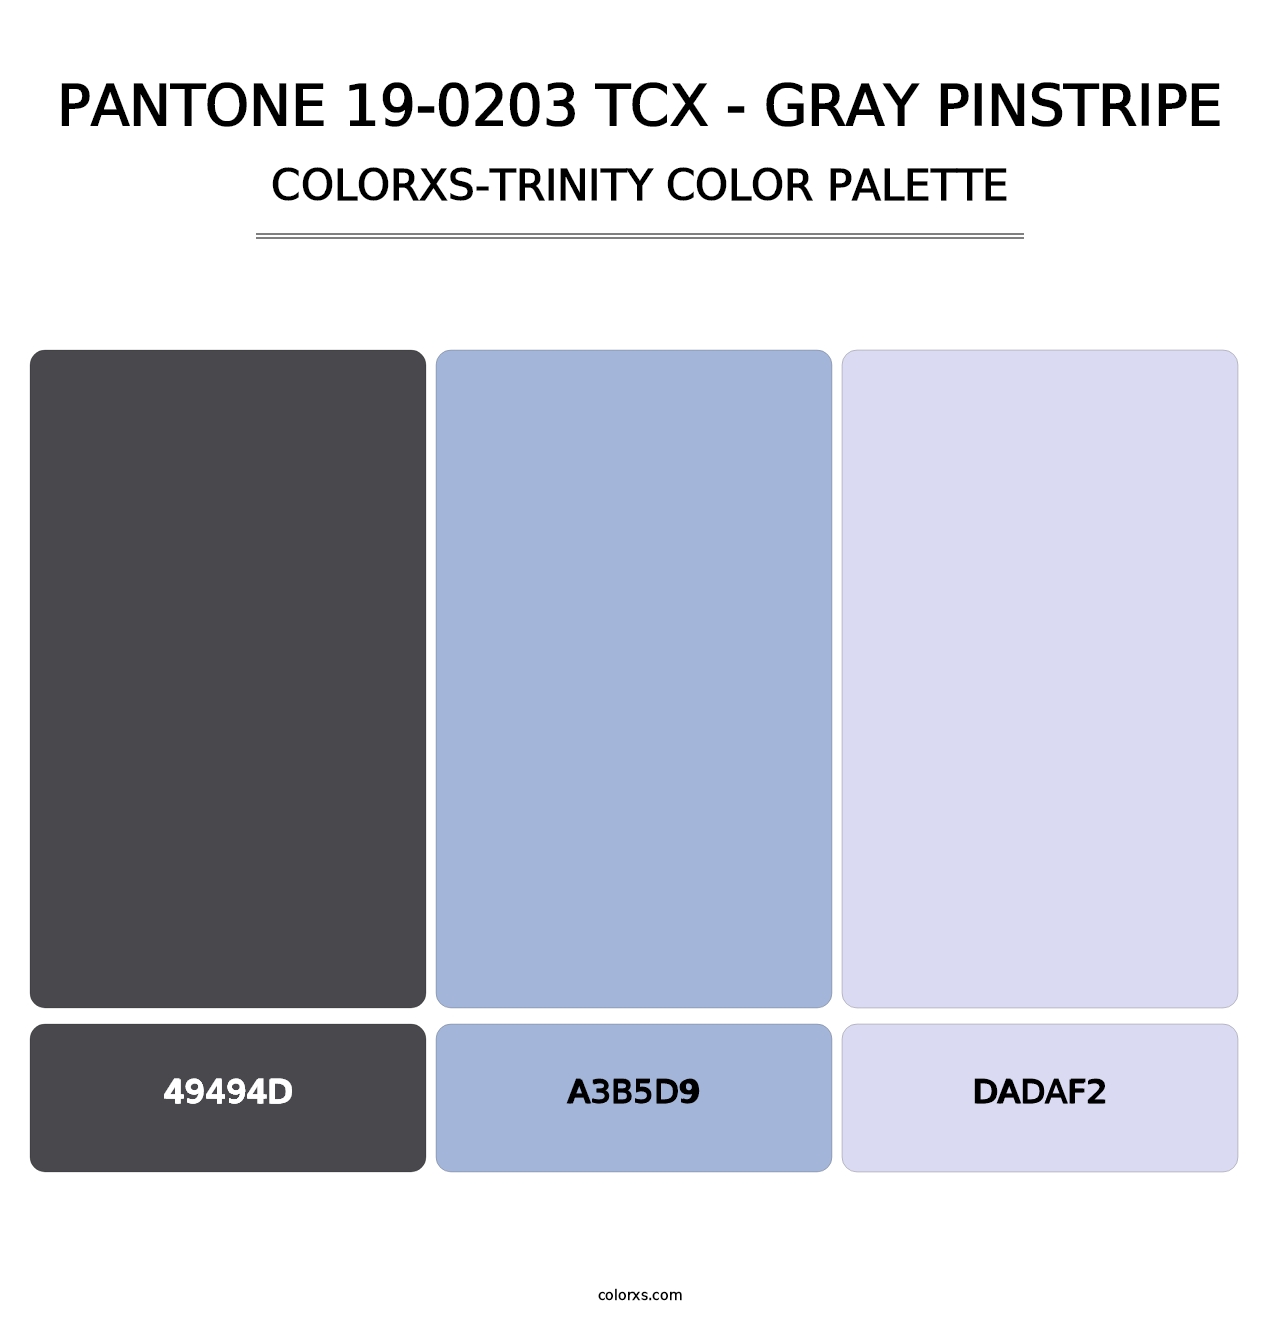 PANTONE 19-0203 TCX - Gray Pinstripe - Colorxs Trinity Palette